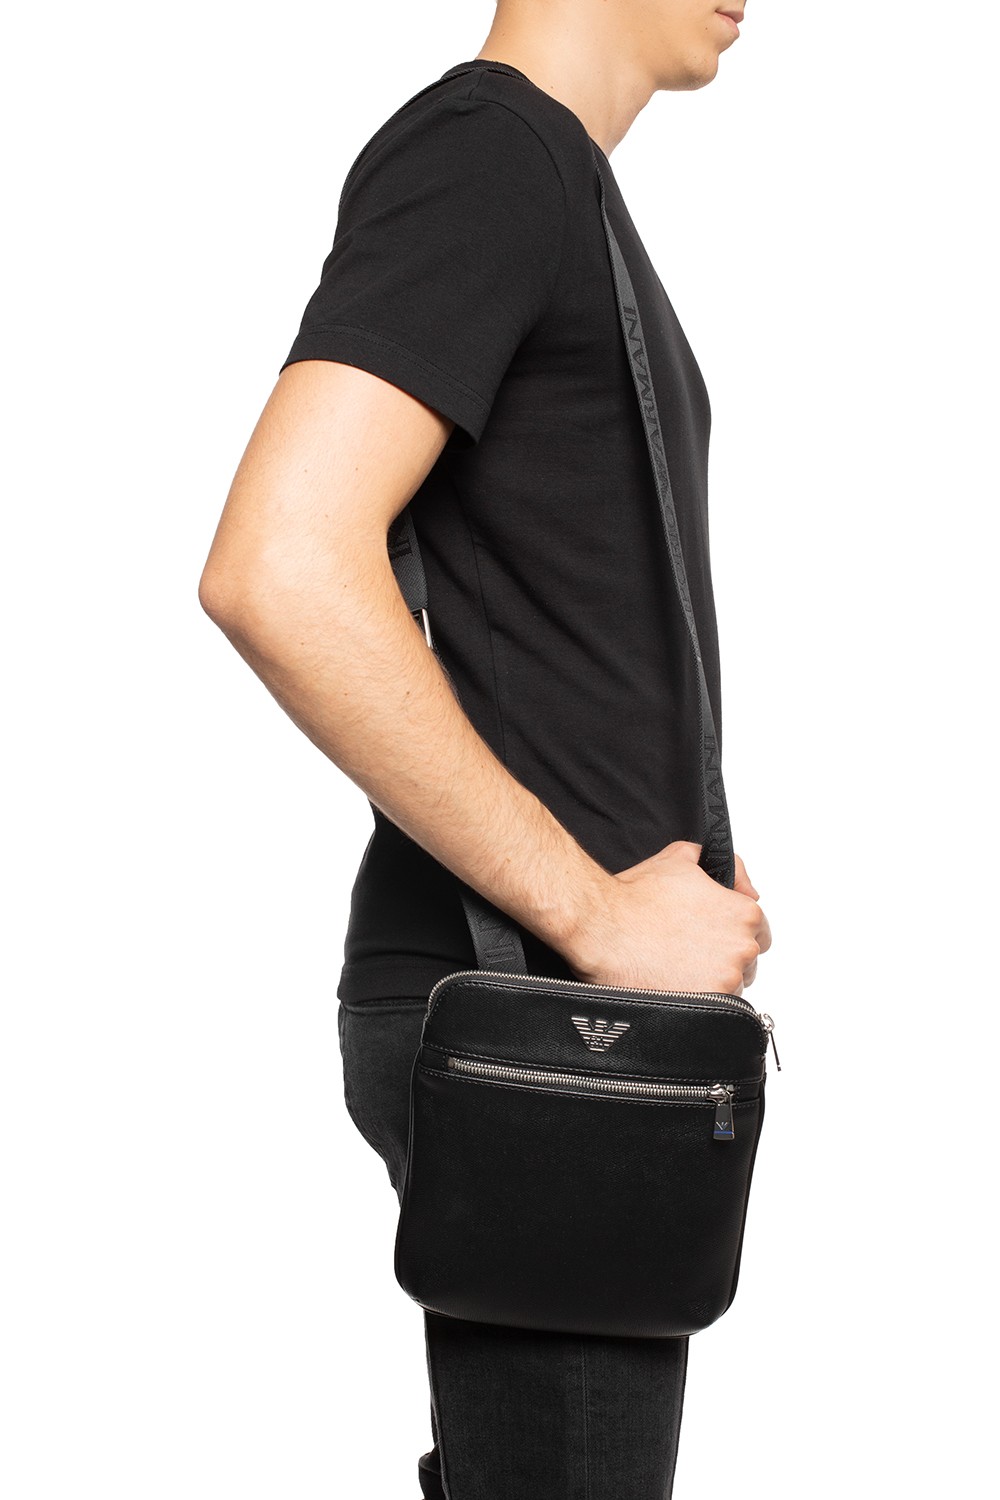 Emporio Armani Shoulder bag with metal logo